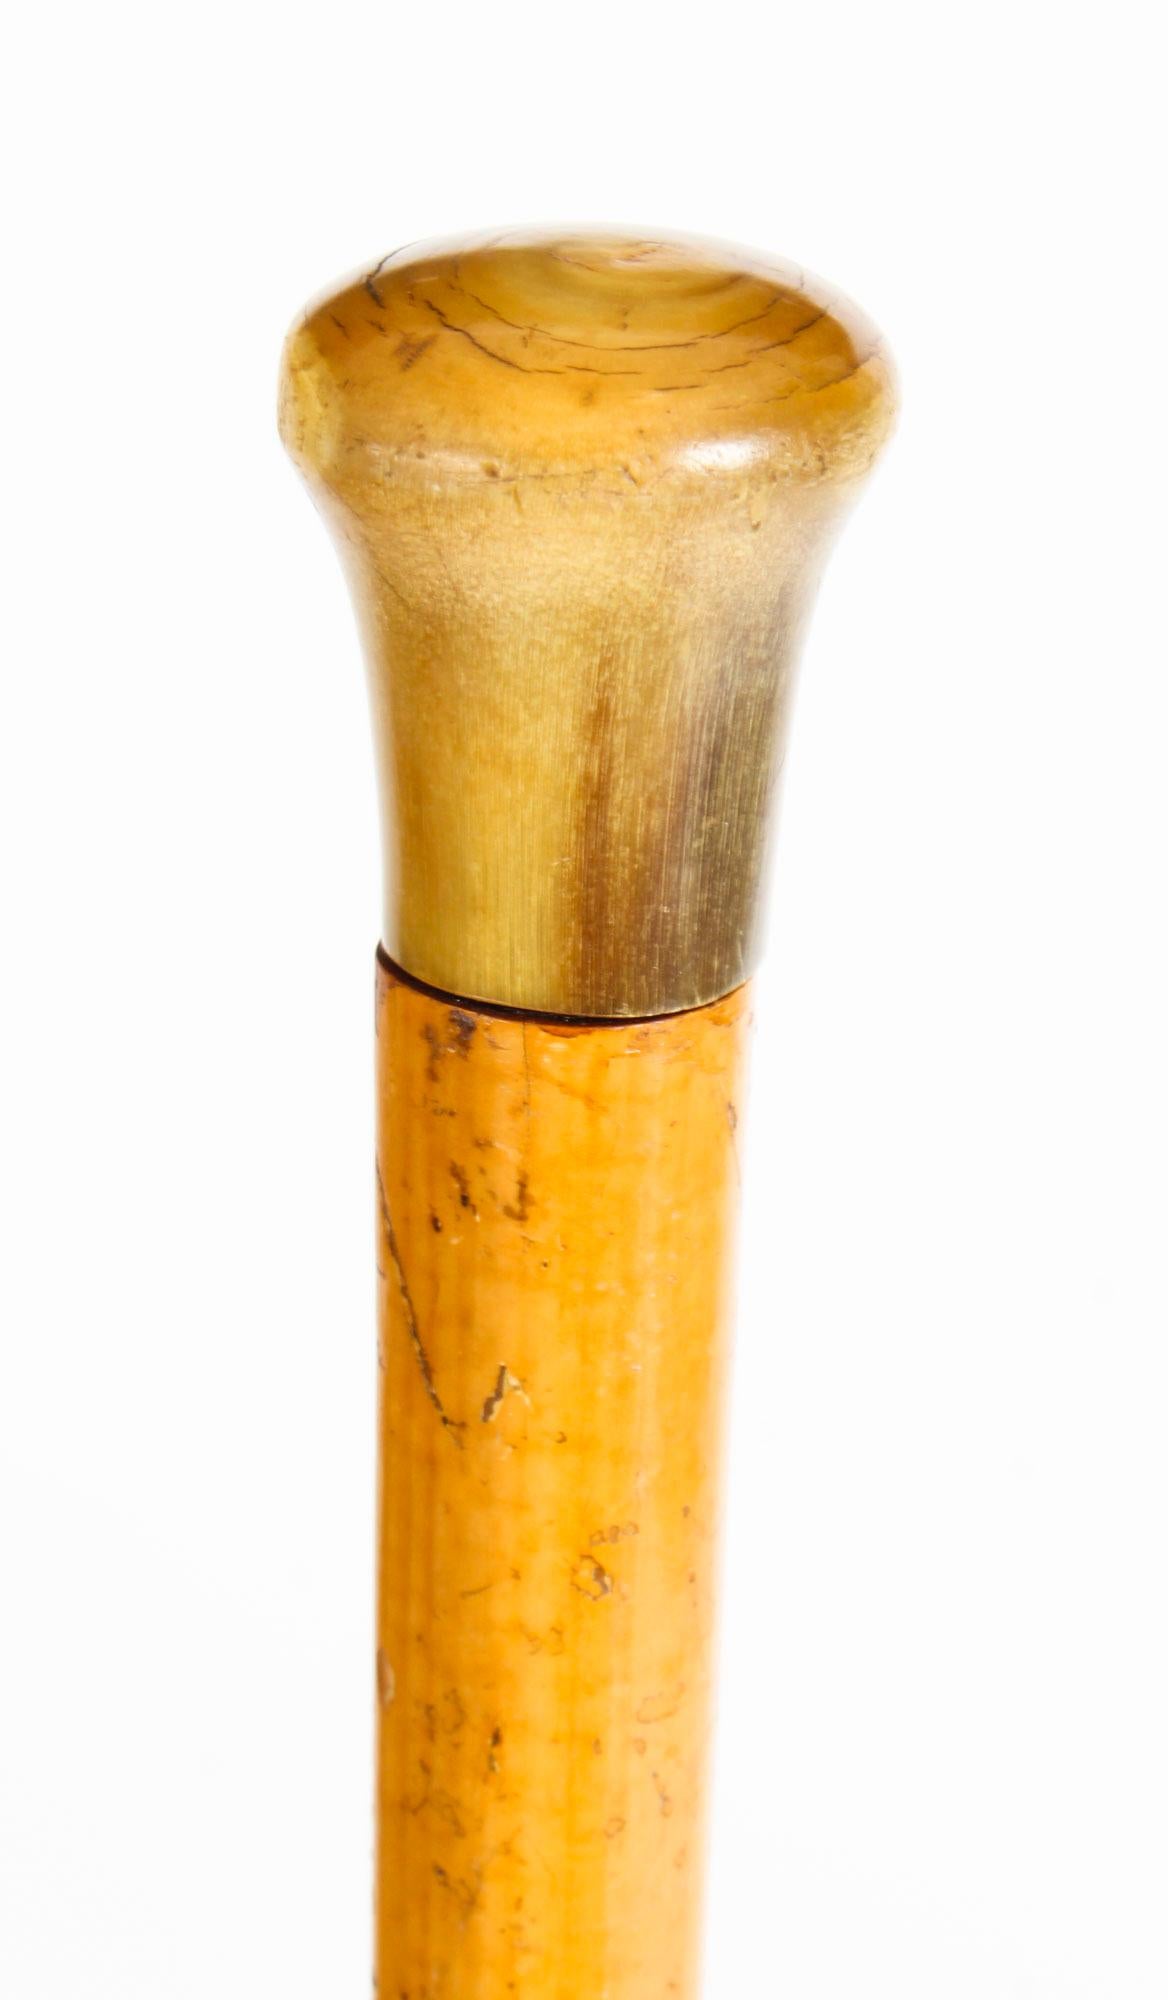 Superbe canne victorienne ancienne en corne à pommeau bombé pour gentleman, datant d'environ 1880.

Le pommeau en corne se dévisse pour révéler un tire-bouchon de voyage, sur une tige conique en bois de Malacca, avec sa virole d'origine en